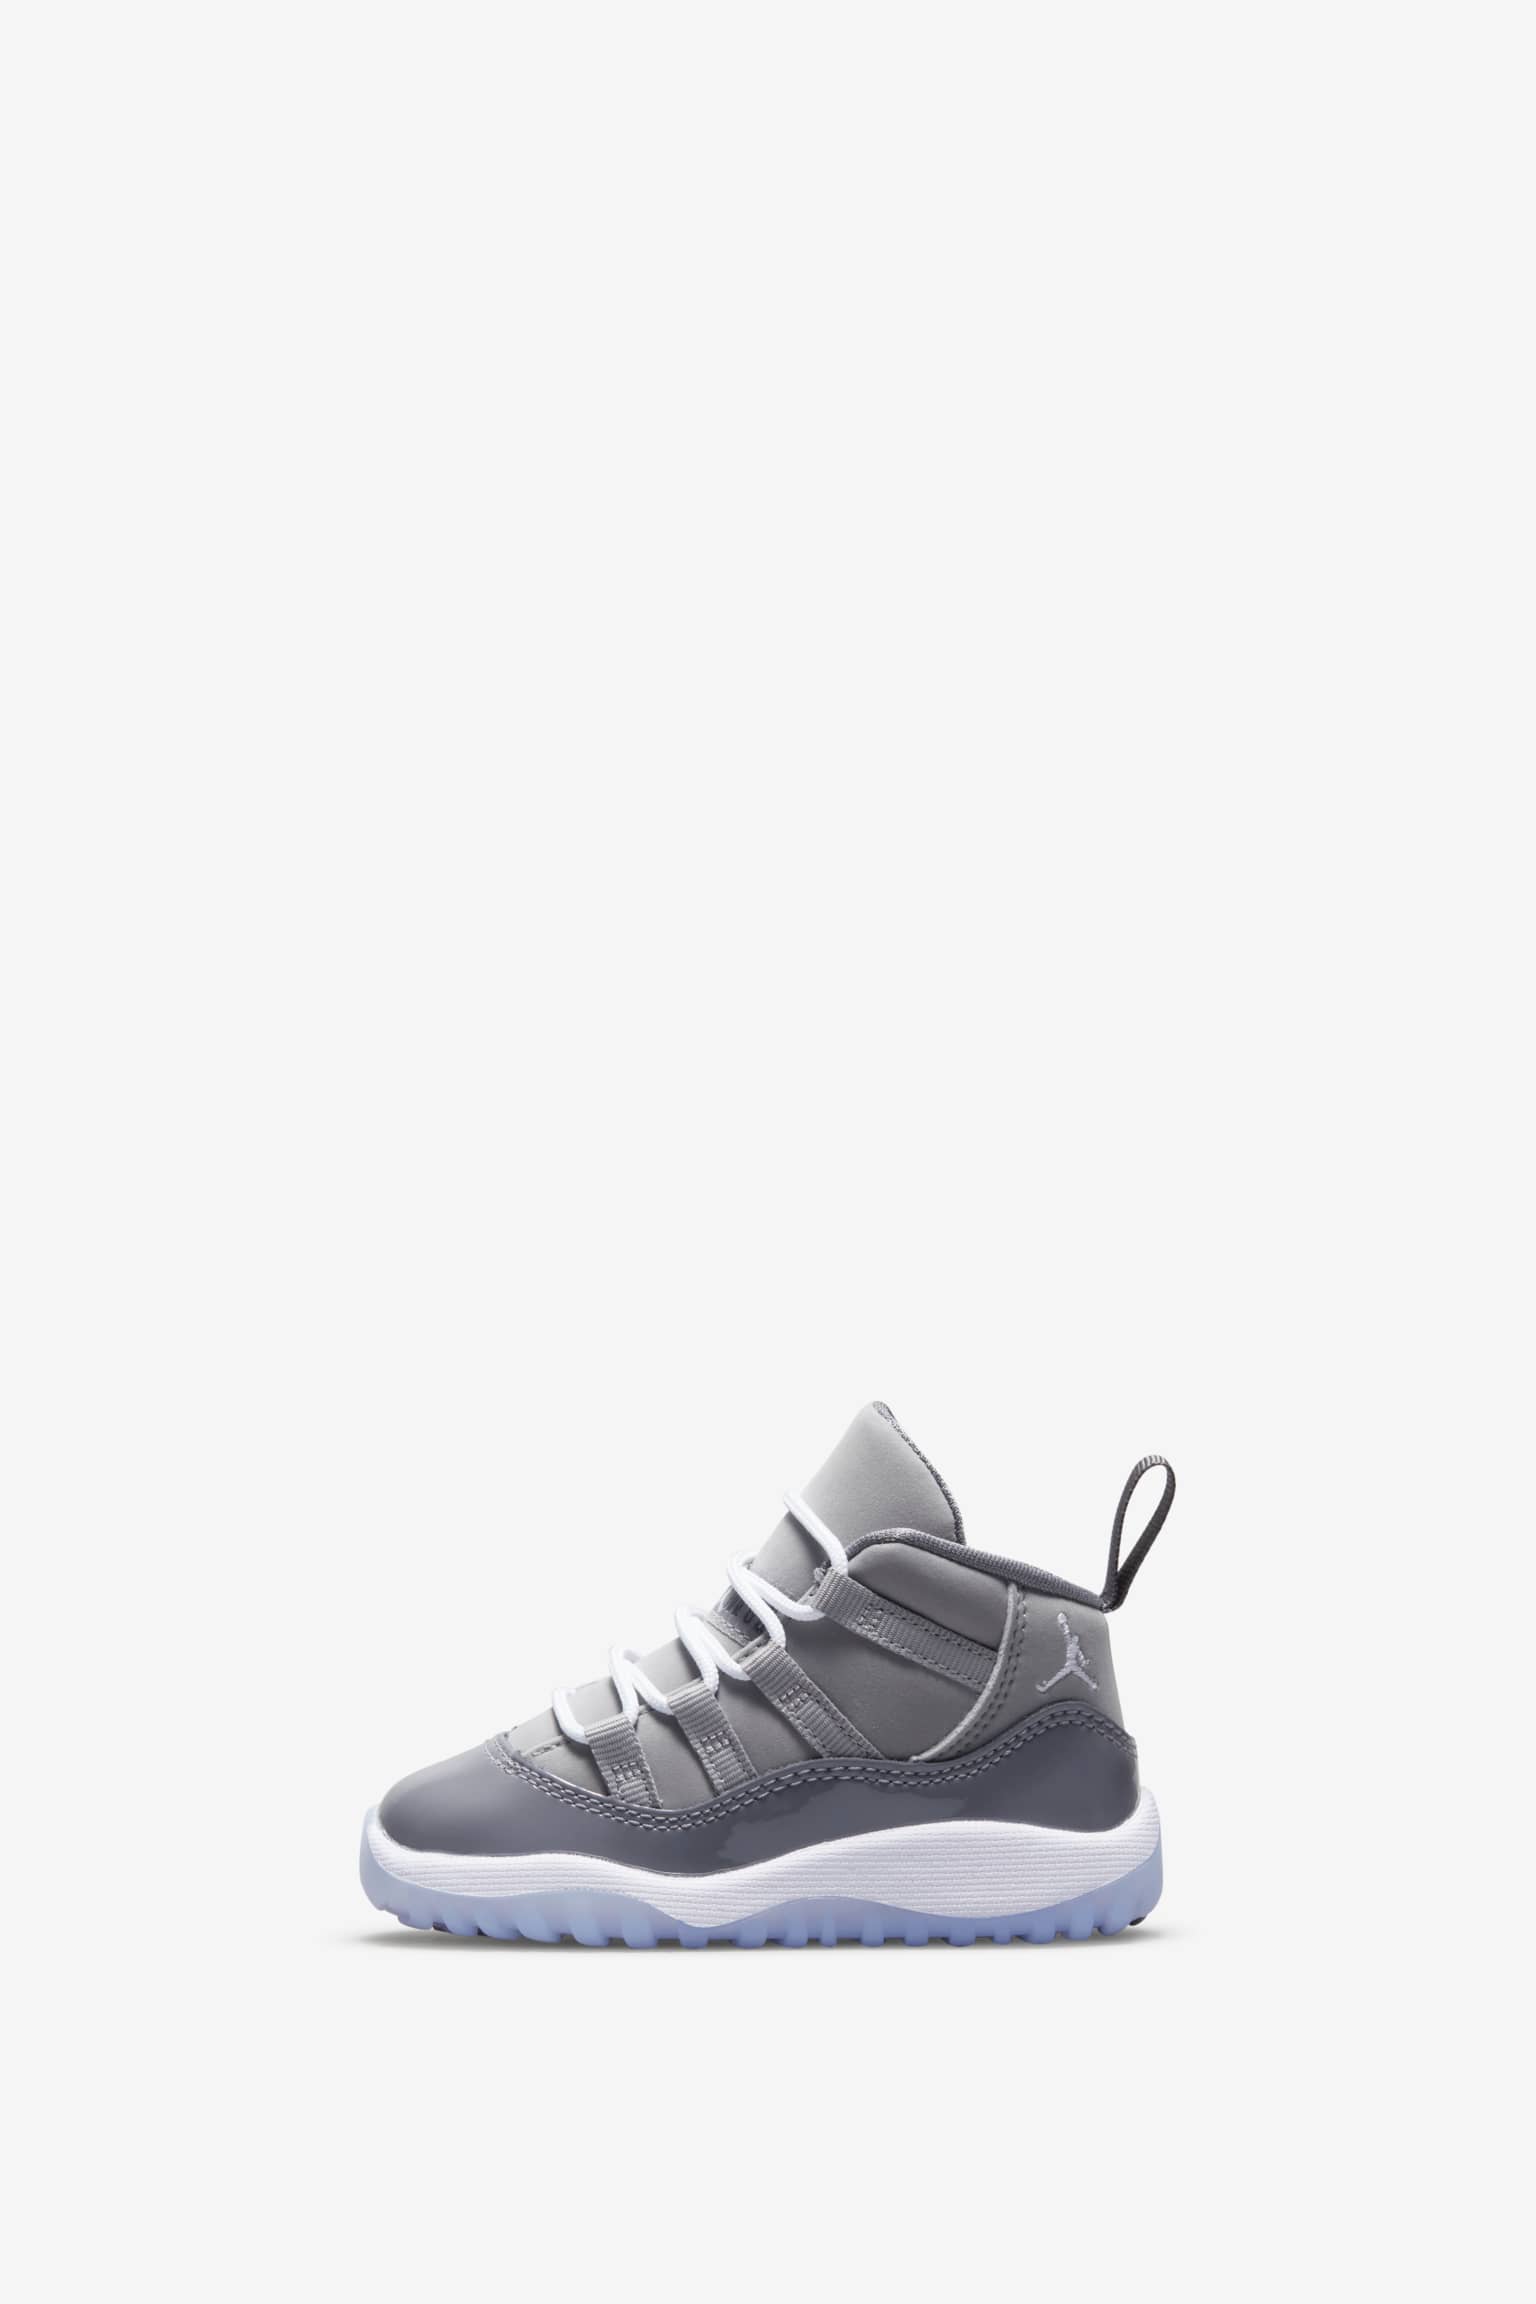 エアジョーダン 11 Nike Air Jordan 11 "Cool Grey